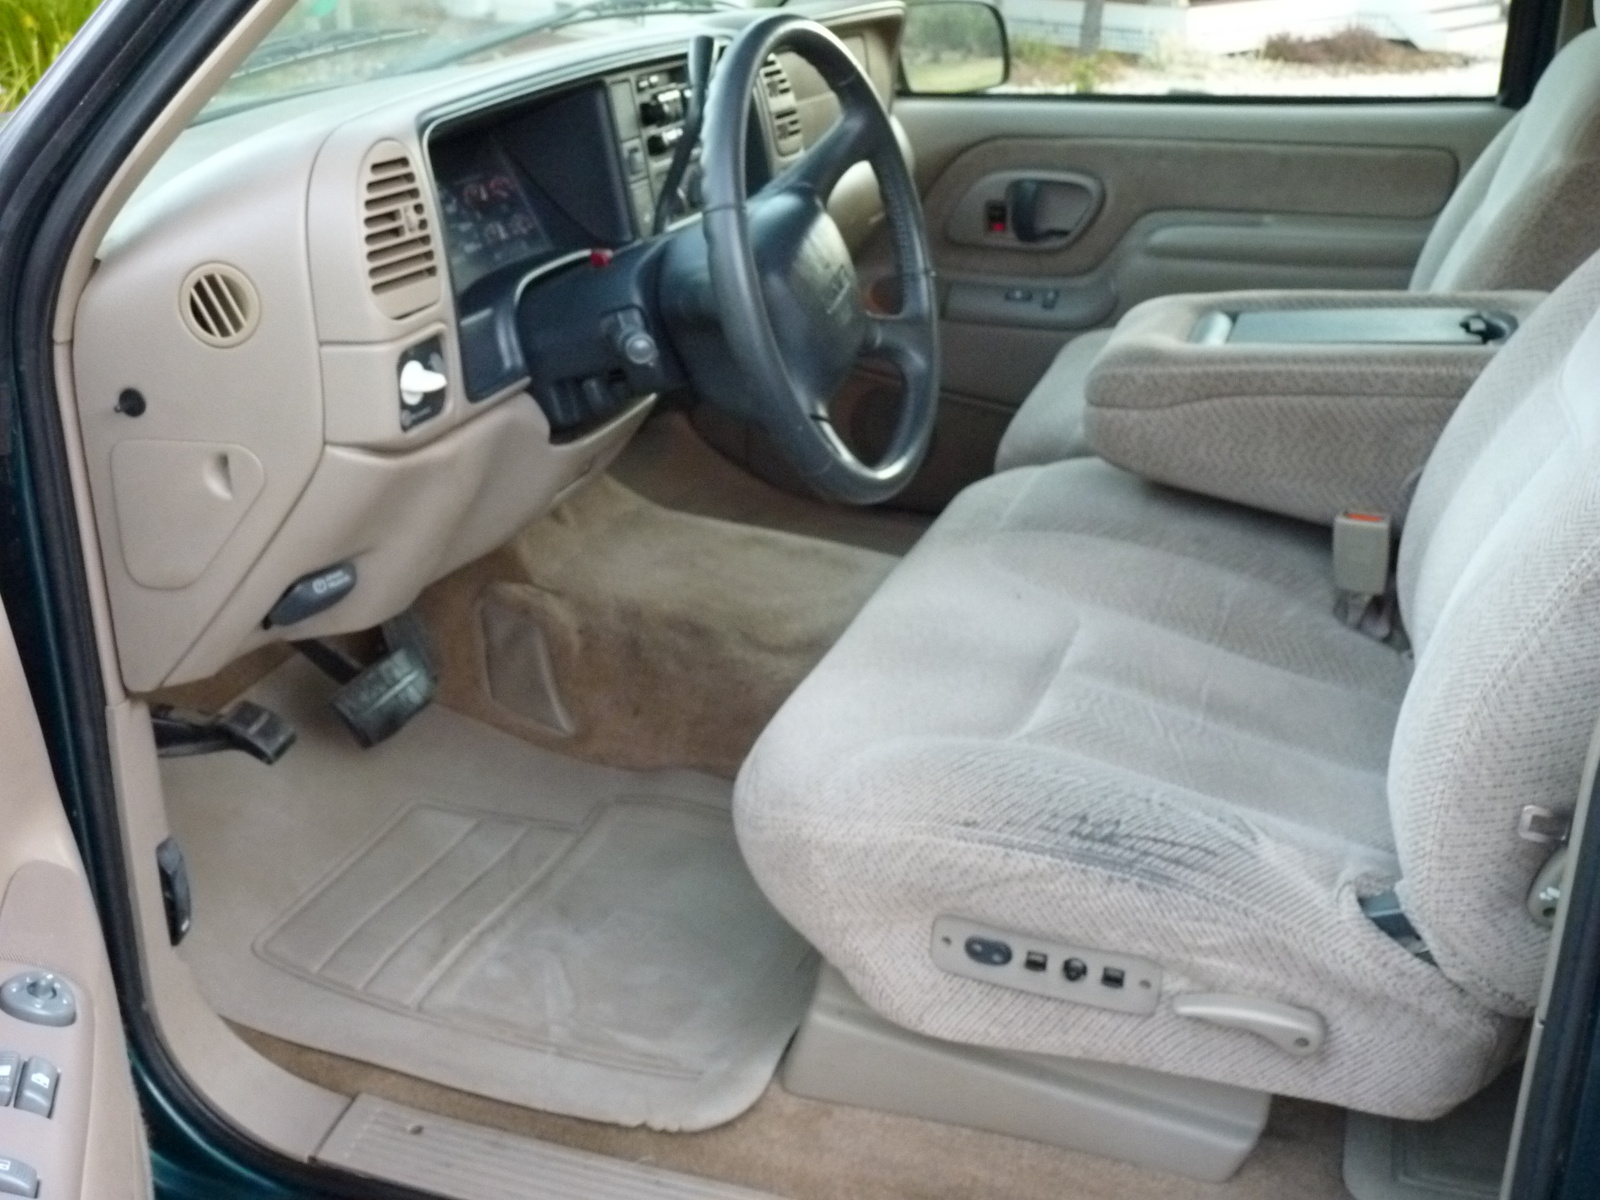 1998 c1500 interior doors pull rods